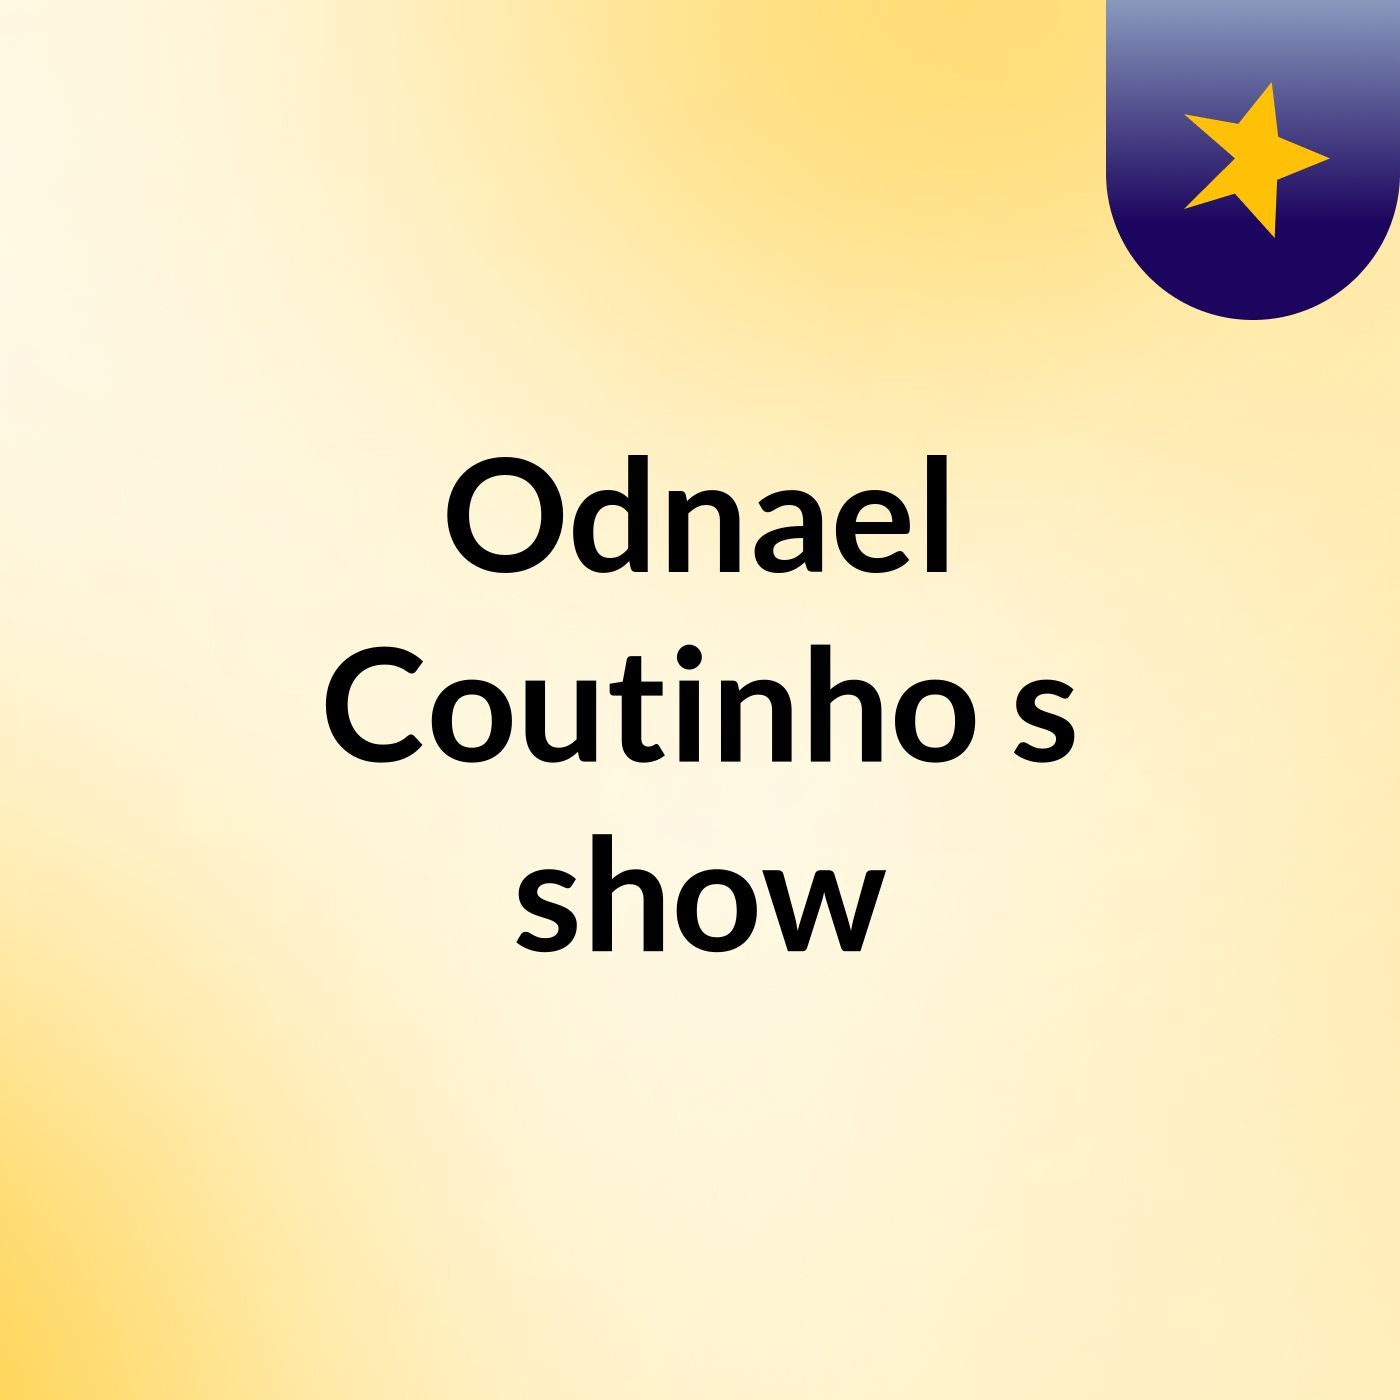 Episódio 2 - Odnael Coutinho's show